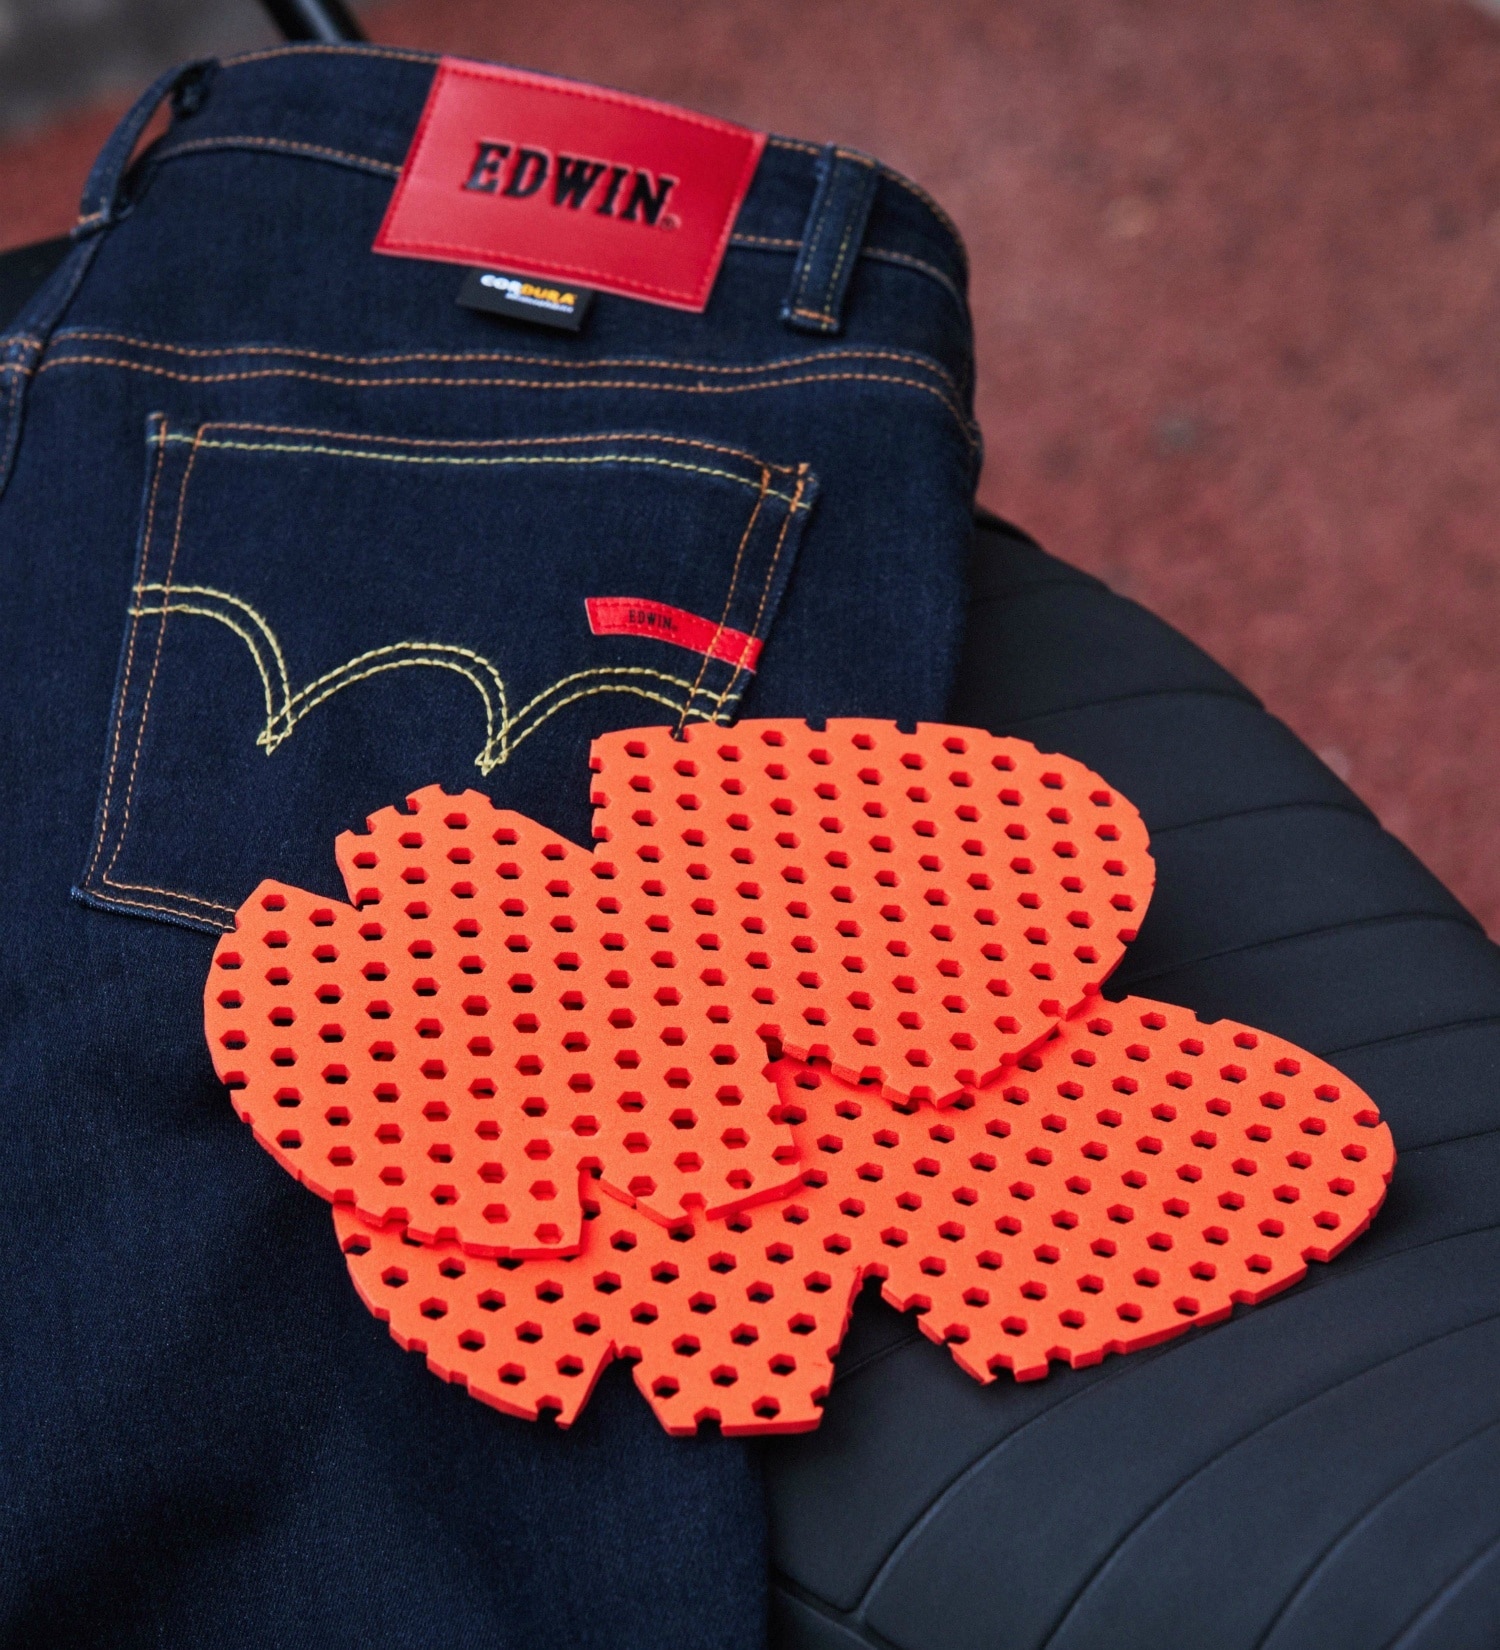 EDWIN(エドウイン)のバイク用 コーデュラストレッチデニム ハイパーストレッチCORDURA denim fabric|パンツ/デニムパンツ/メンズ|インディゴブルー